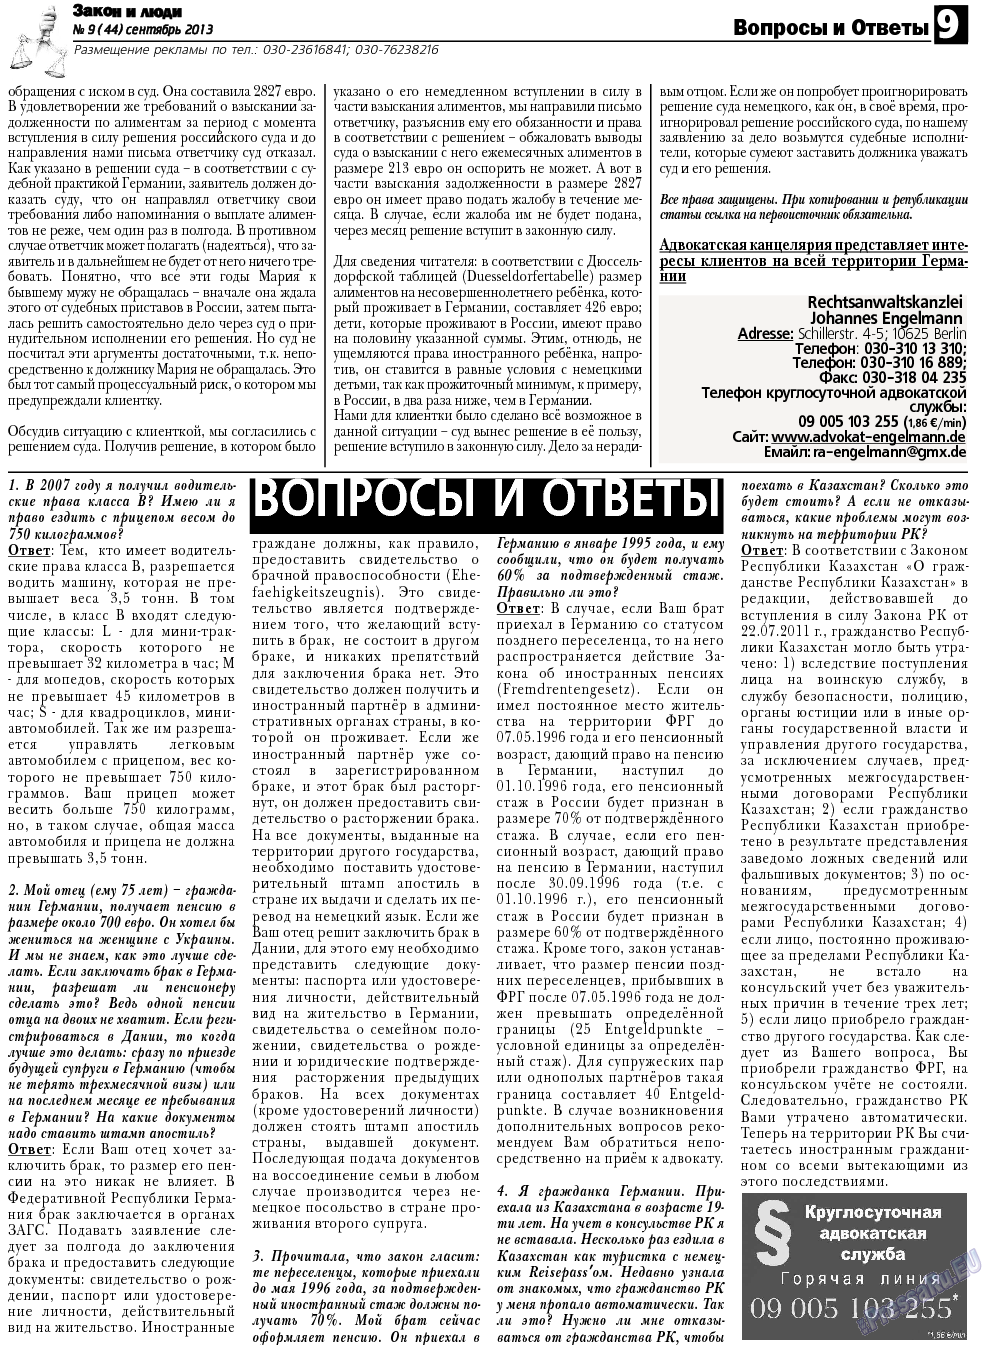 Закон и люди, газета. 2013 №9 стр.9